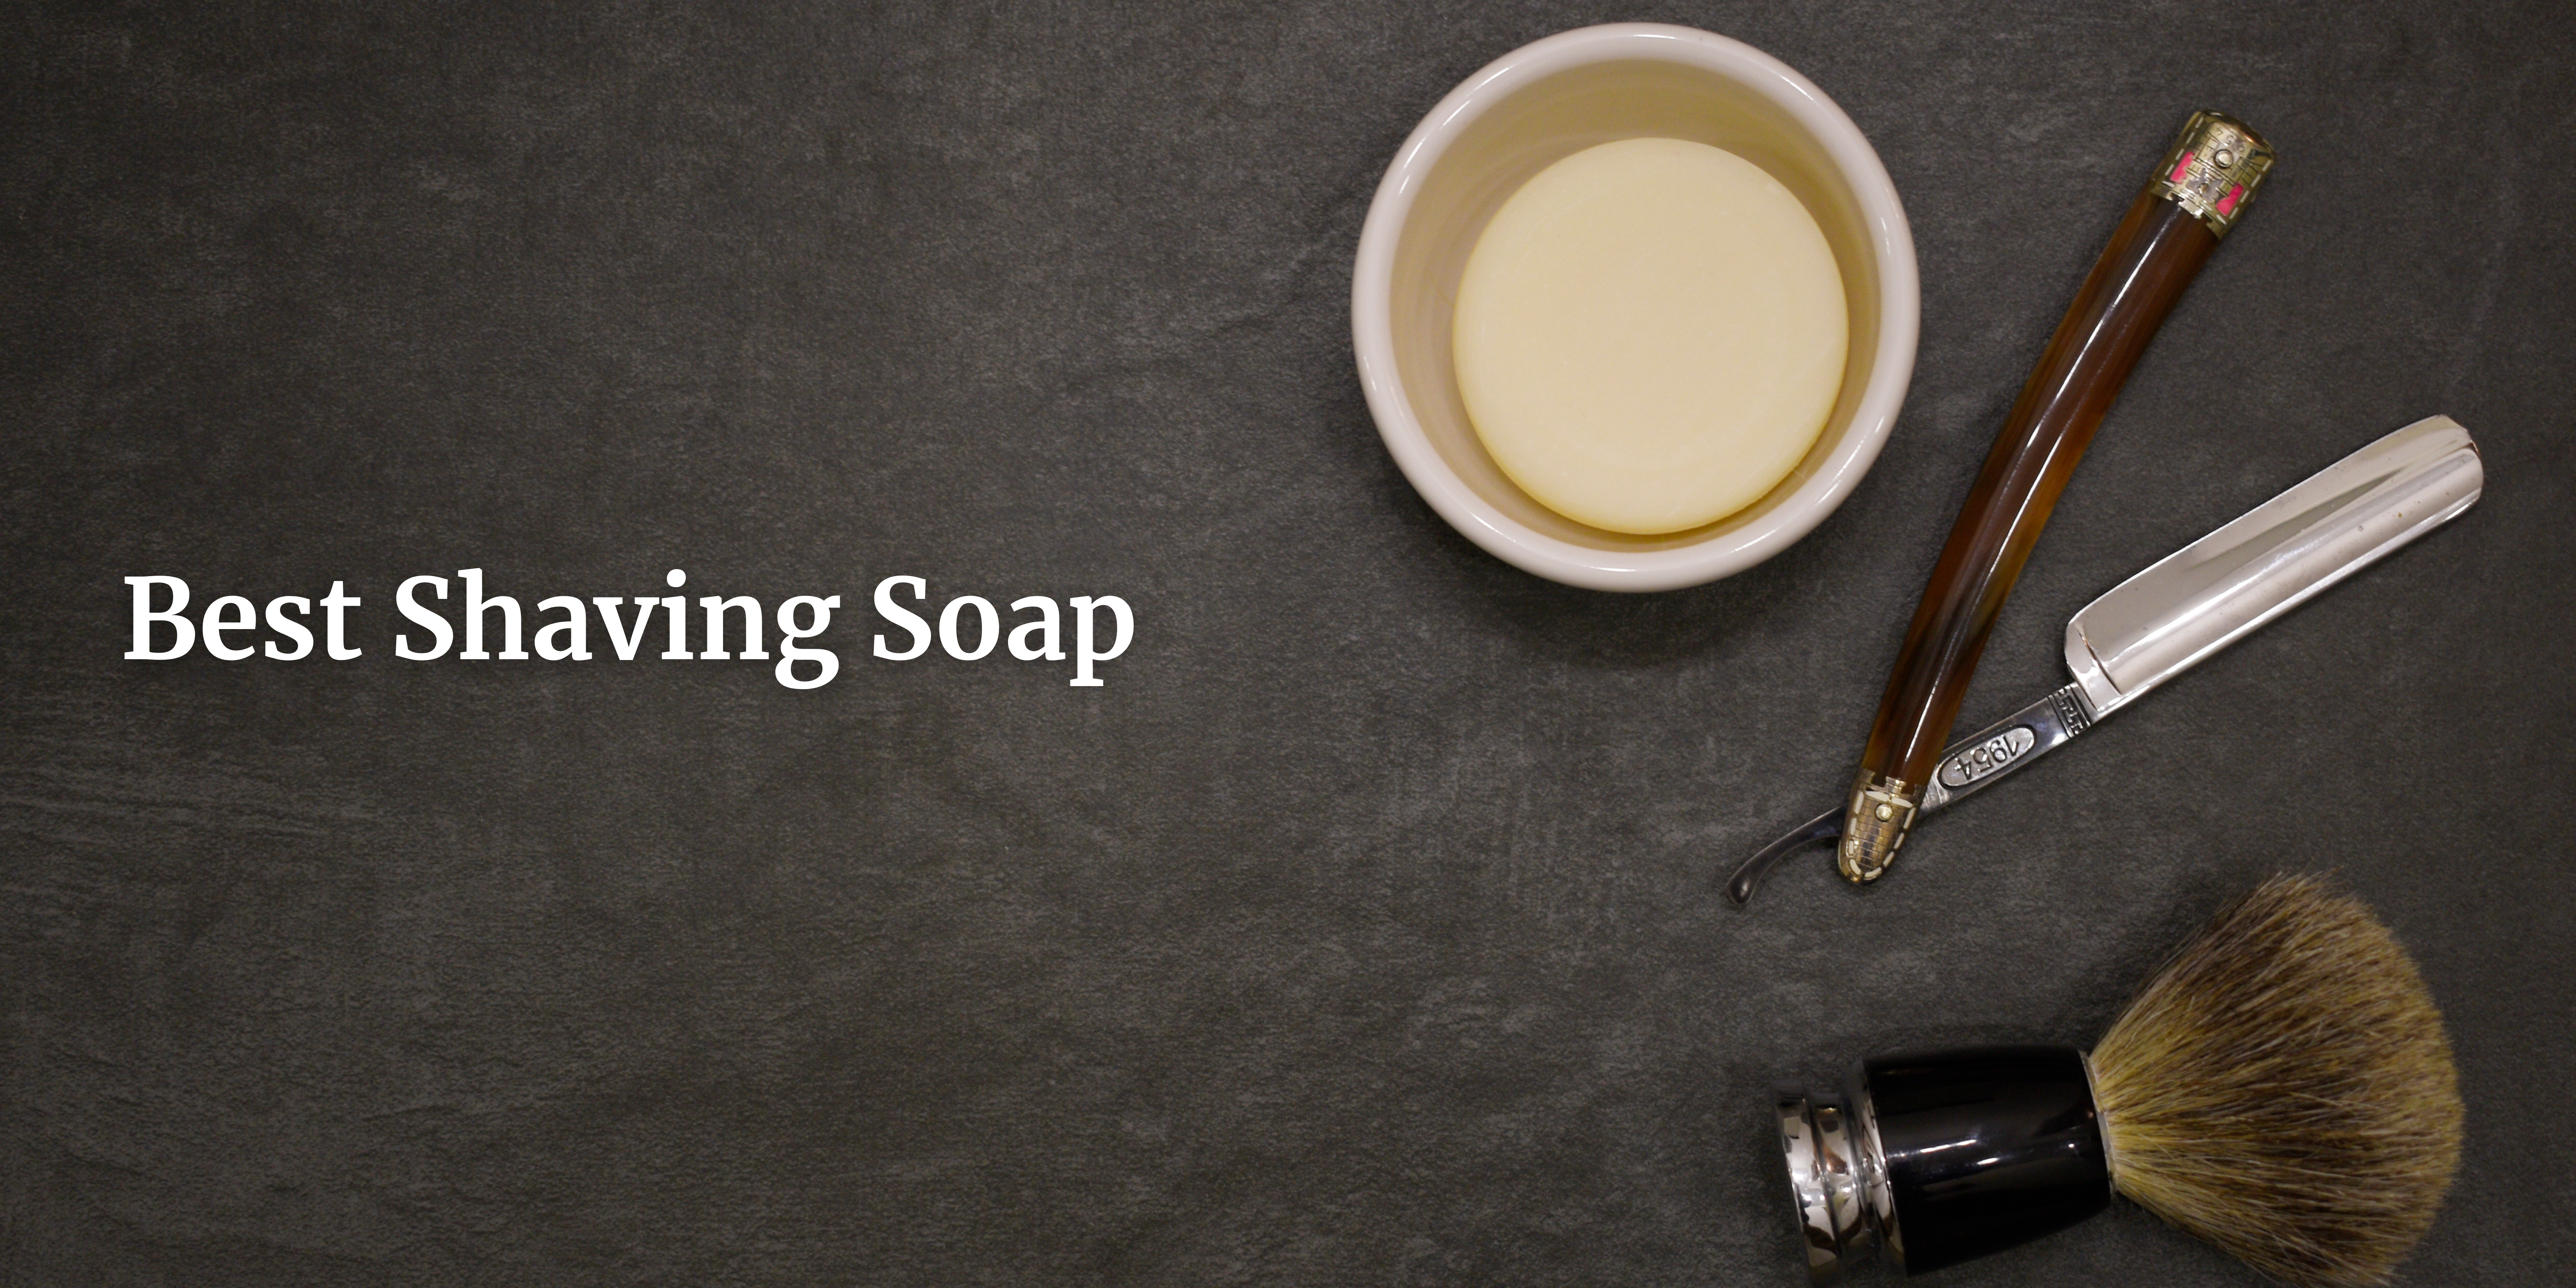 shaving soap in Spain